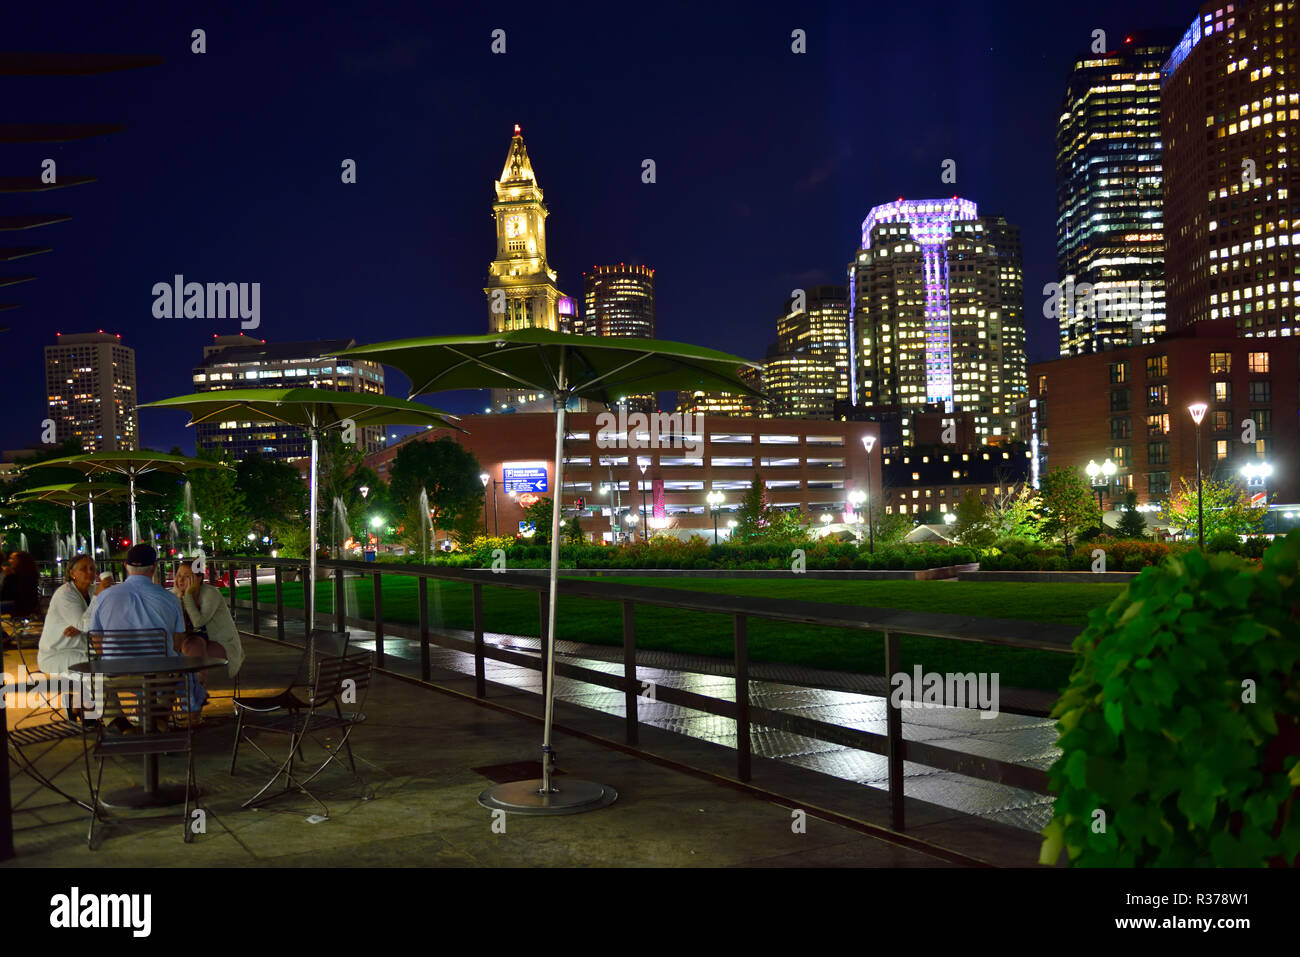 Scène de nuit de l'open plaza et parc avec de grands bâtiments de Boston financial district derrière, Massachusetts, États-Unis Banque D'Images